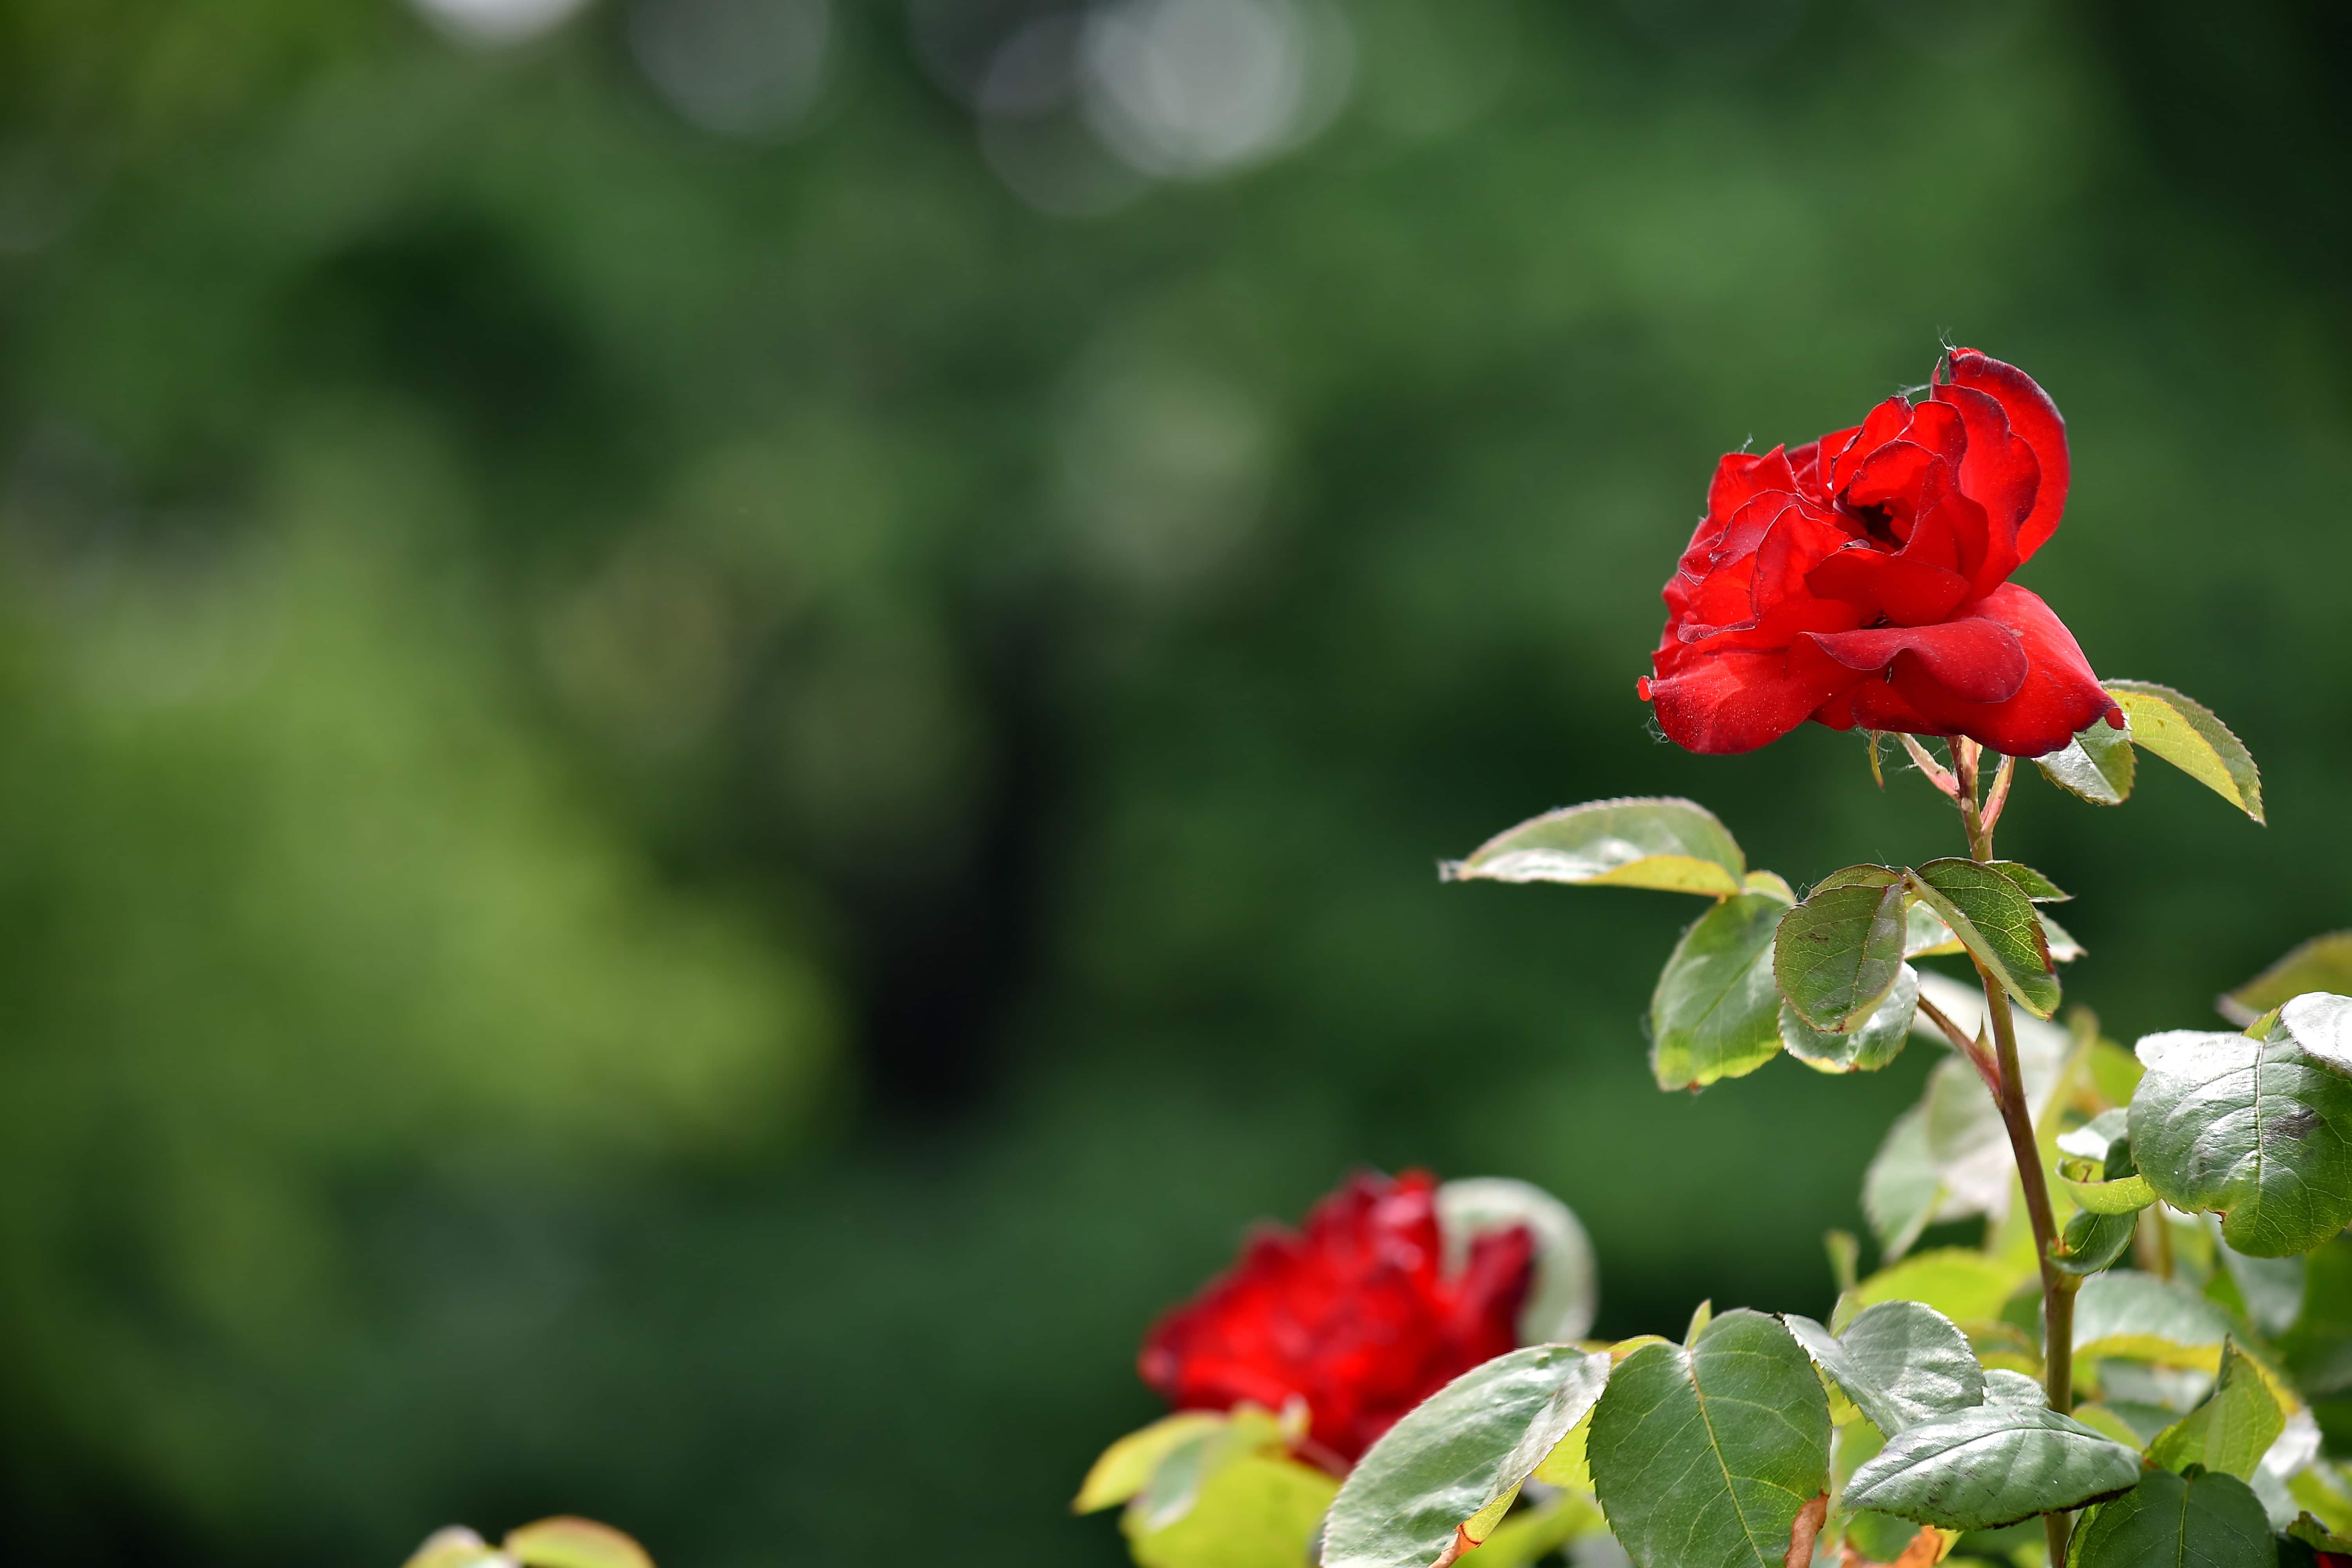 Hình ảnh miễn phí: ảnh đẹp, chồi hoa, vườn hoa, màu đỏ, Hoa hồng, lá, Hoa  hồng, chồi, thực vật, thiên nhiên